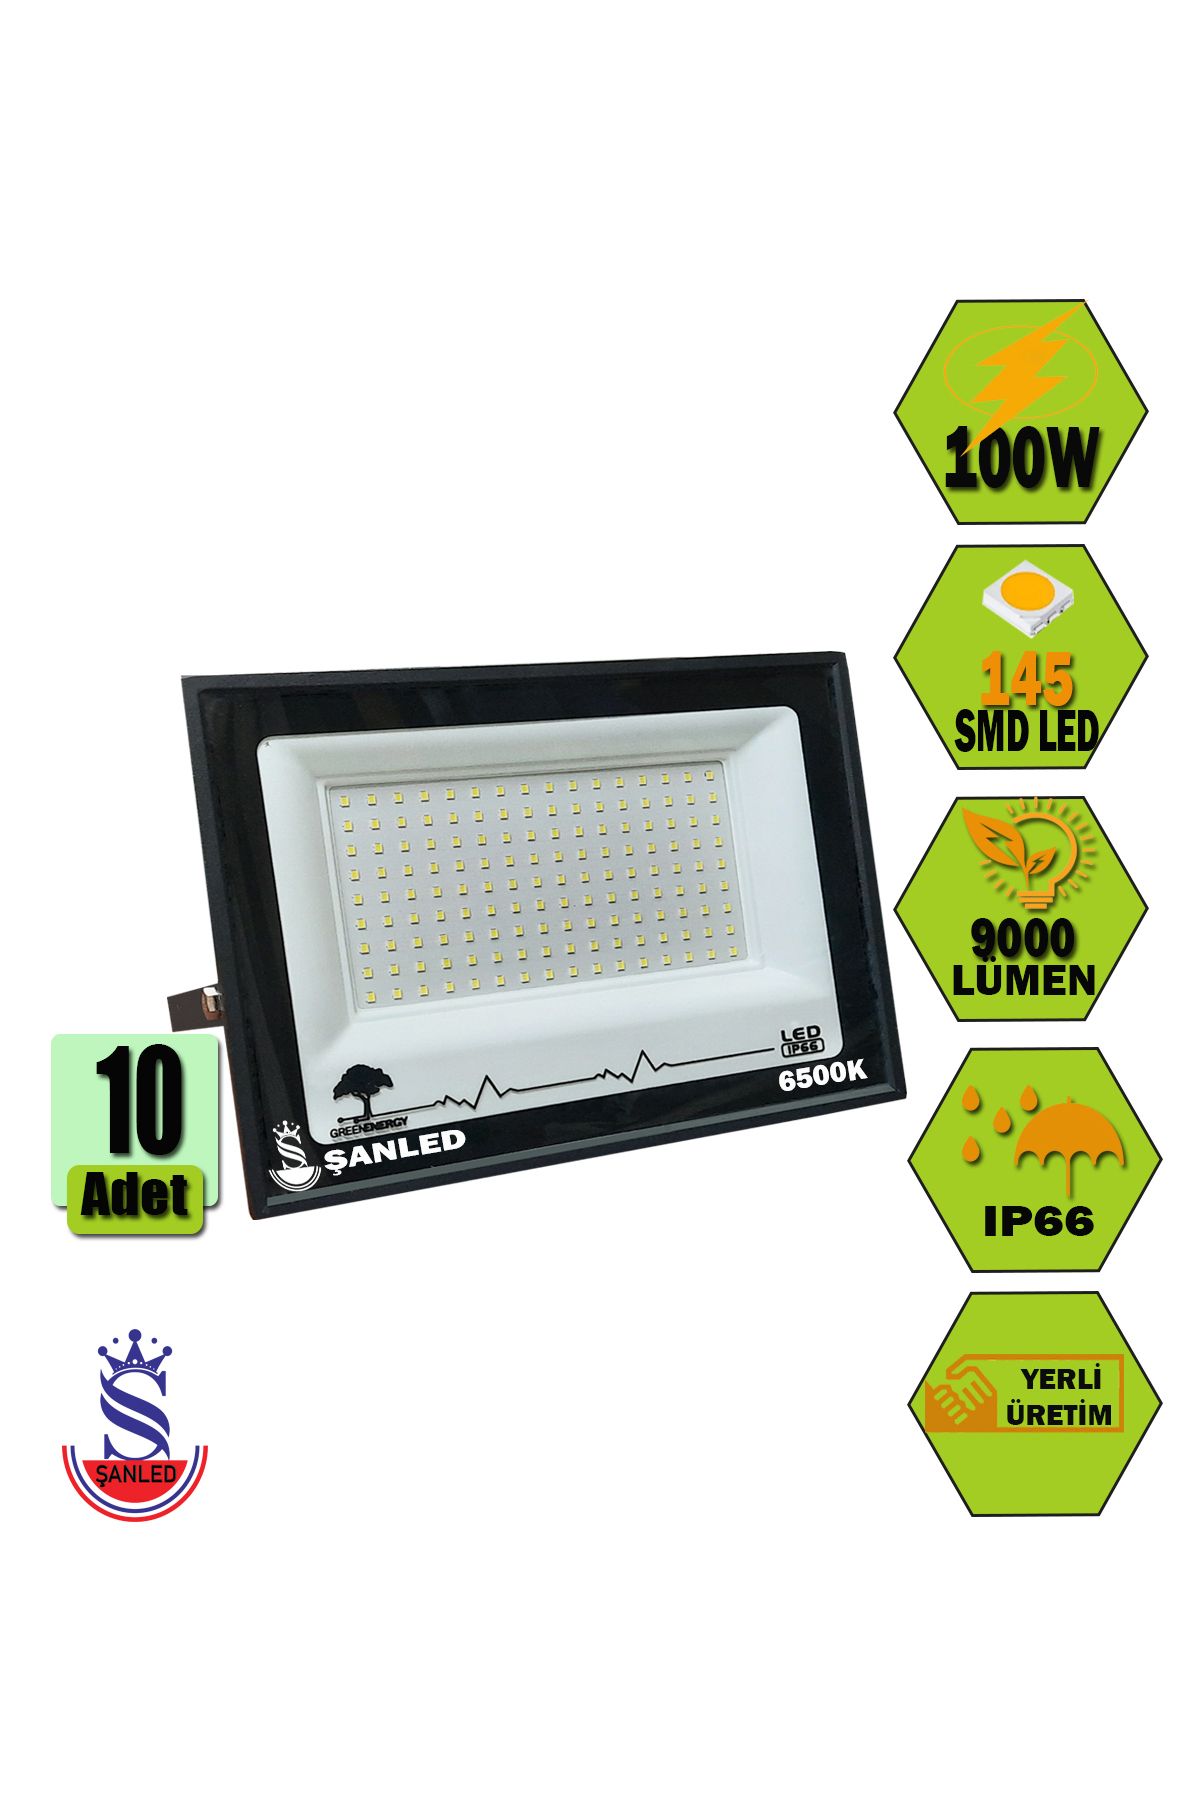 ŞANLED 100W 9000 Lümen 6500K Beyaz Işık Smd LED Projektör-1-2-4-5-8-10 ADET